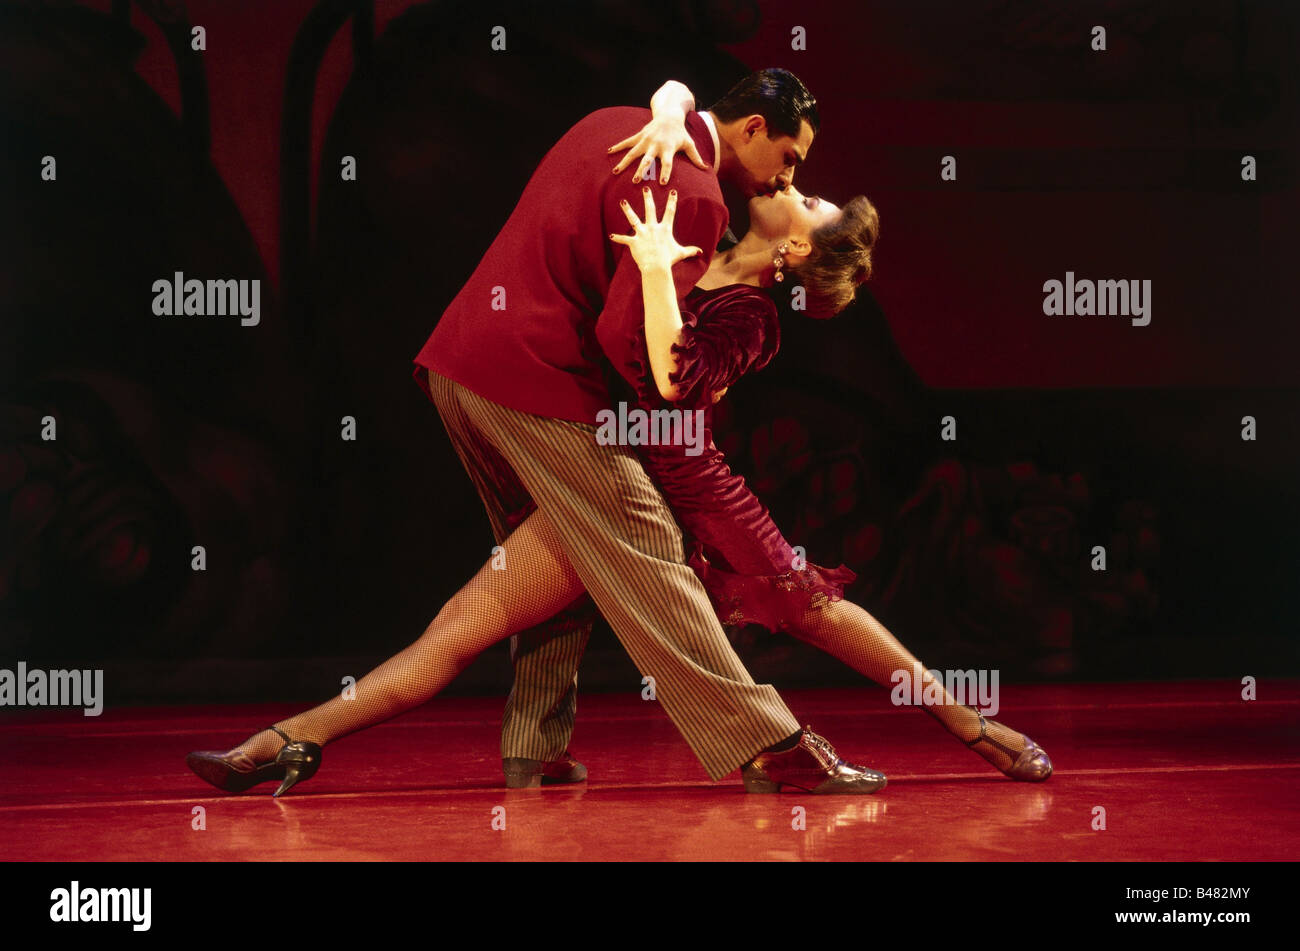 dancing, Tango, 'Tango Passion' Sexteto Mayor, Deutsches Theater, Munich, 10.11.1993, dancing, couple, Stock Photo